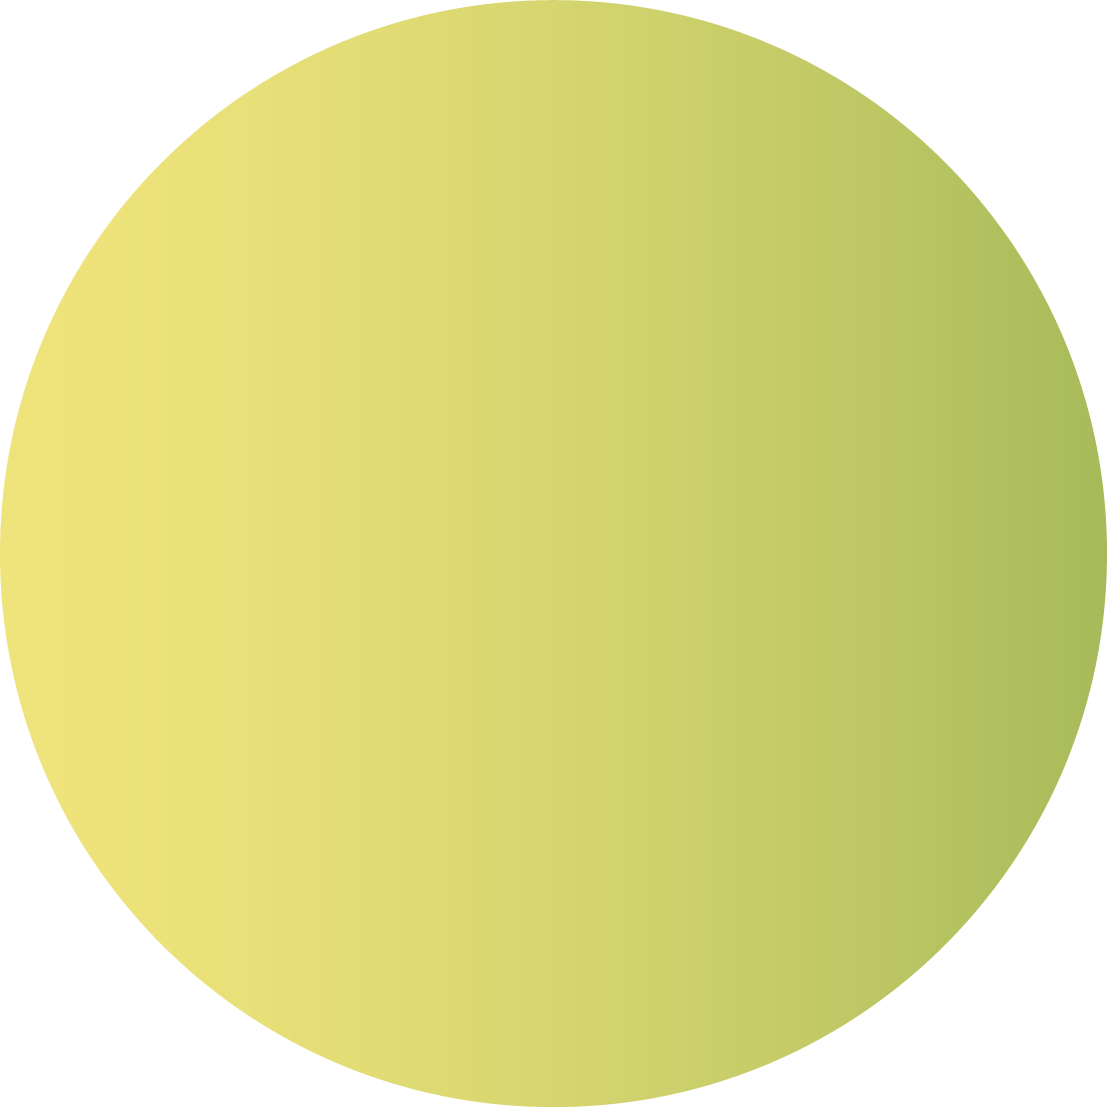 Круг желтый лист. Желтый кружок. Желтый круг для печати. Кружок желтого цвета. Желтые кружочки.